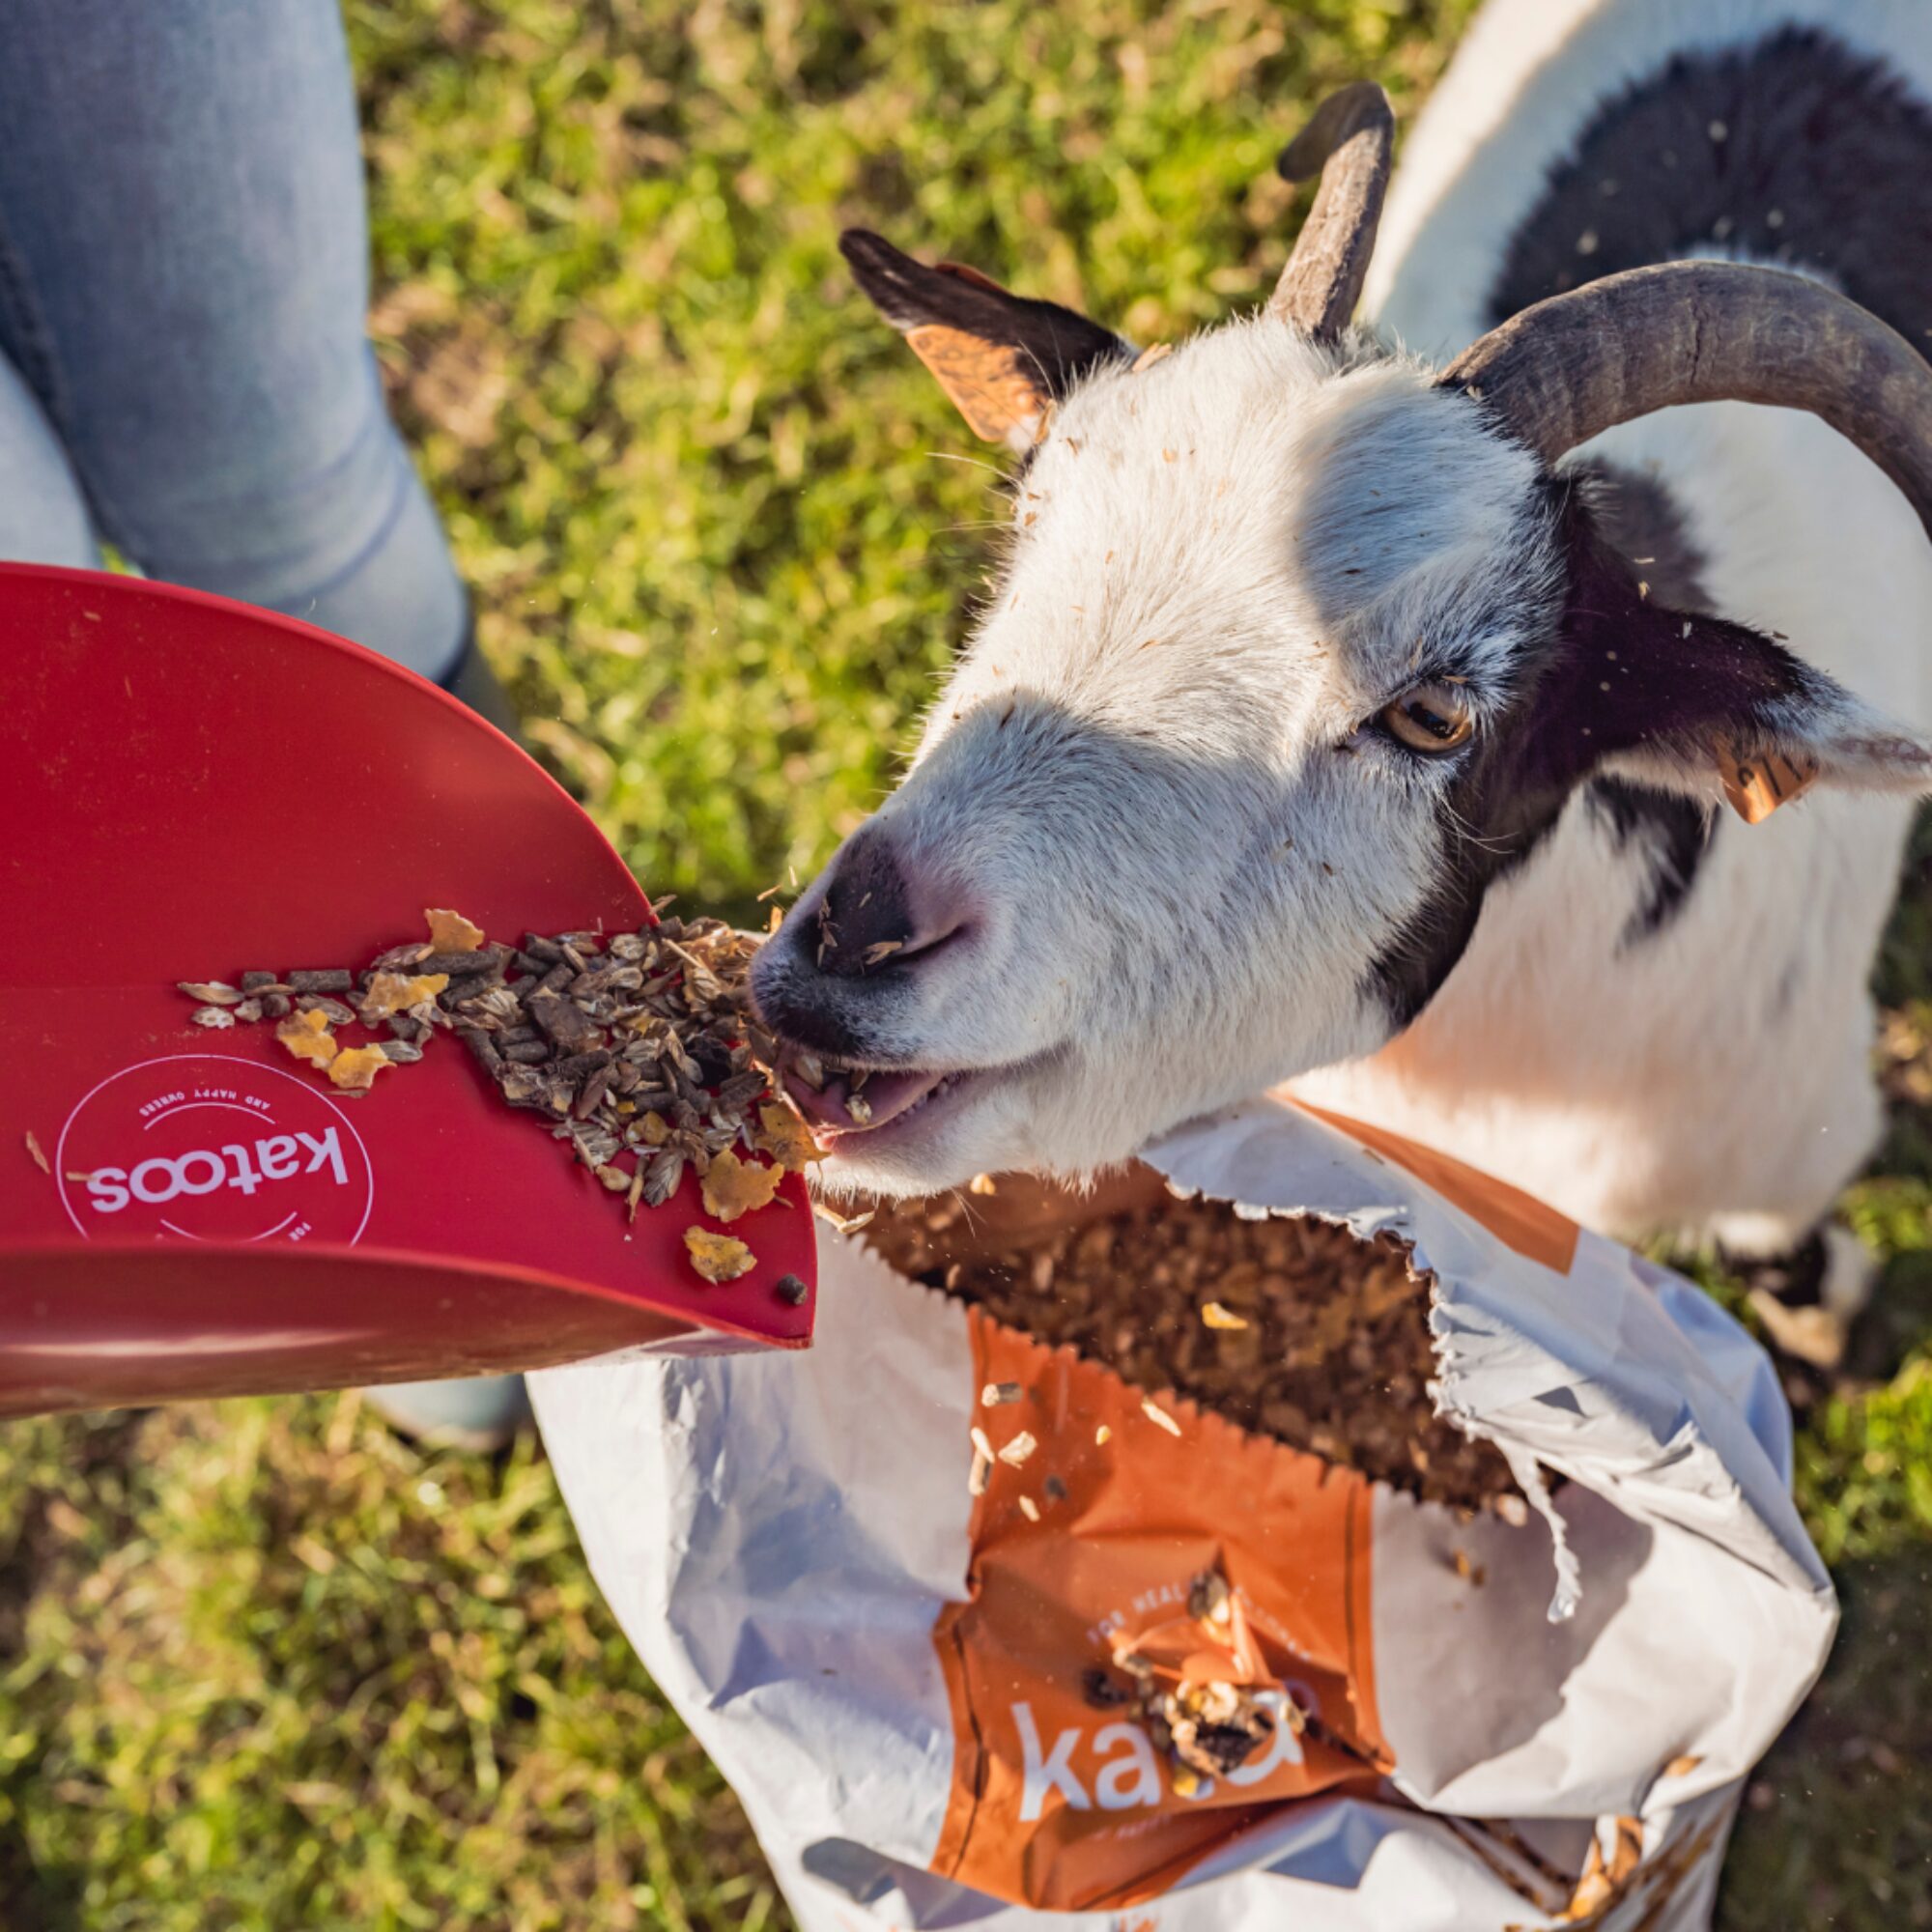 feeding goat